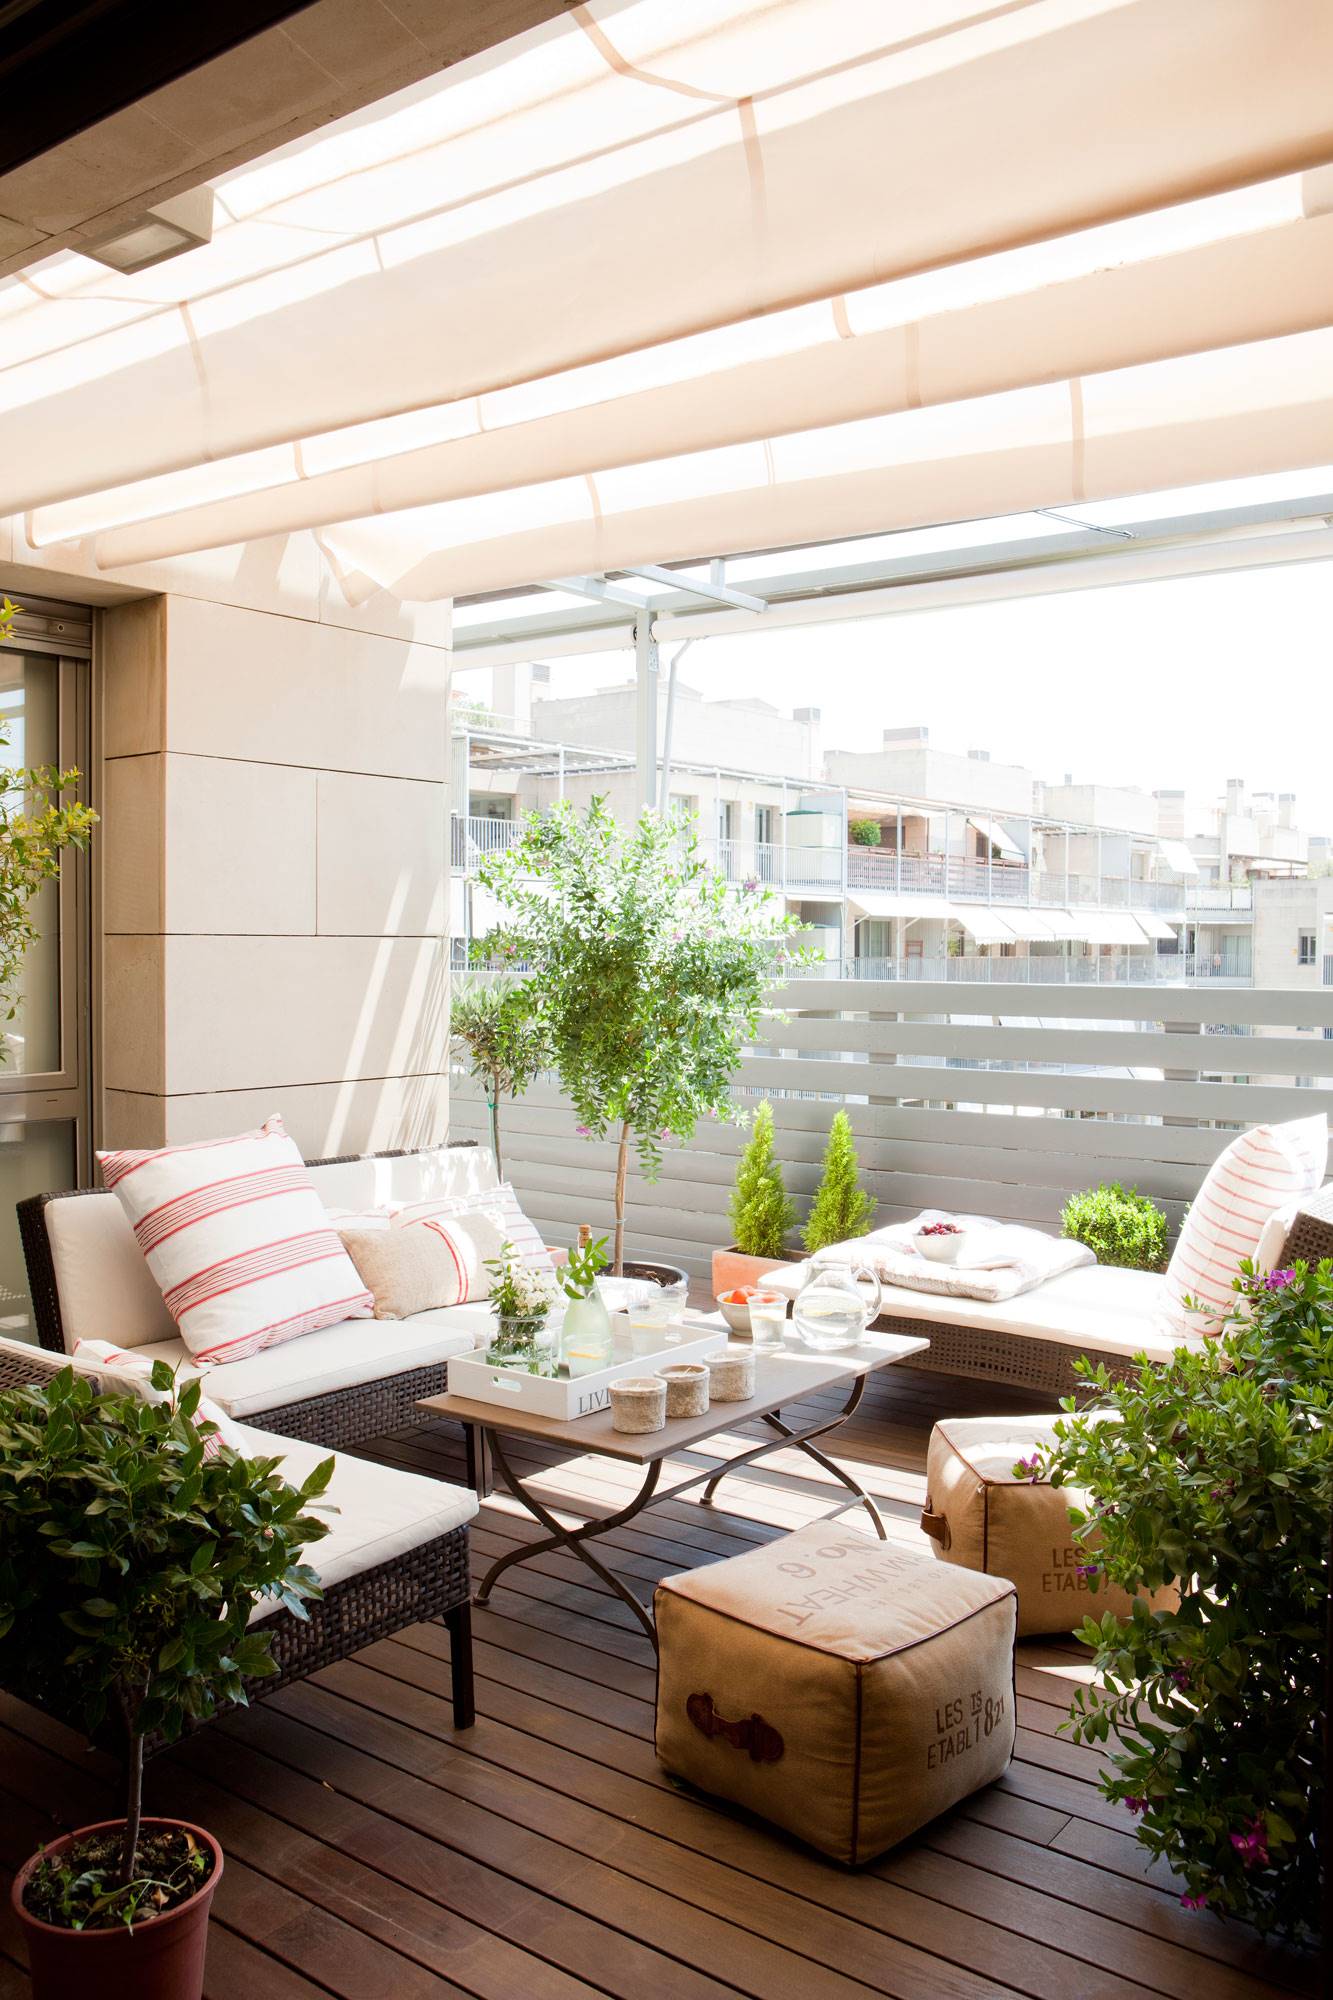 Un salón con terraza de verano y solarium